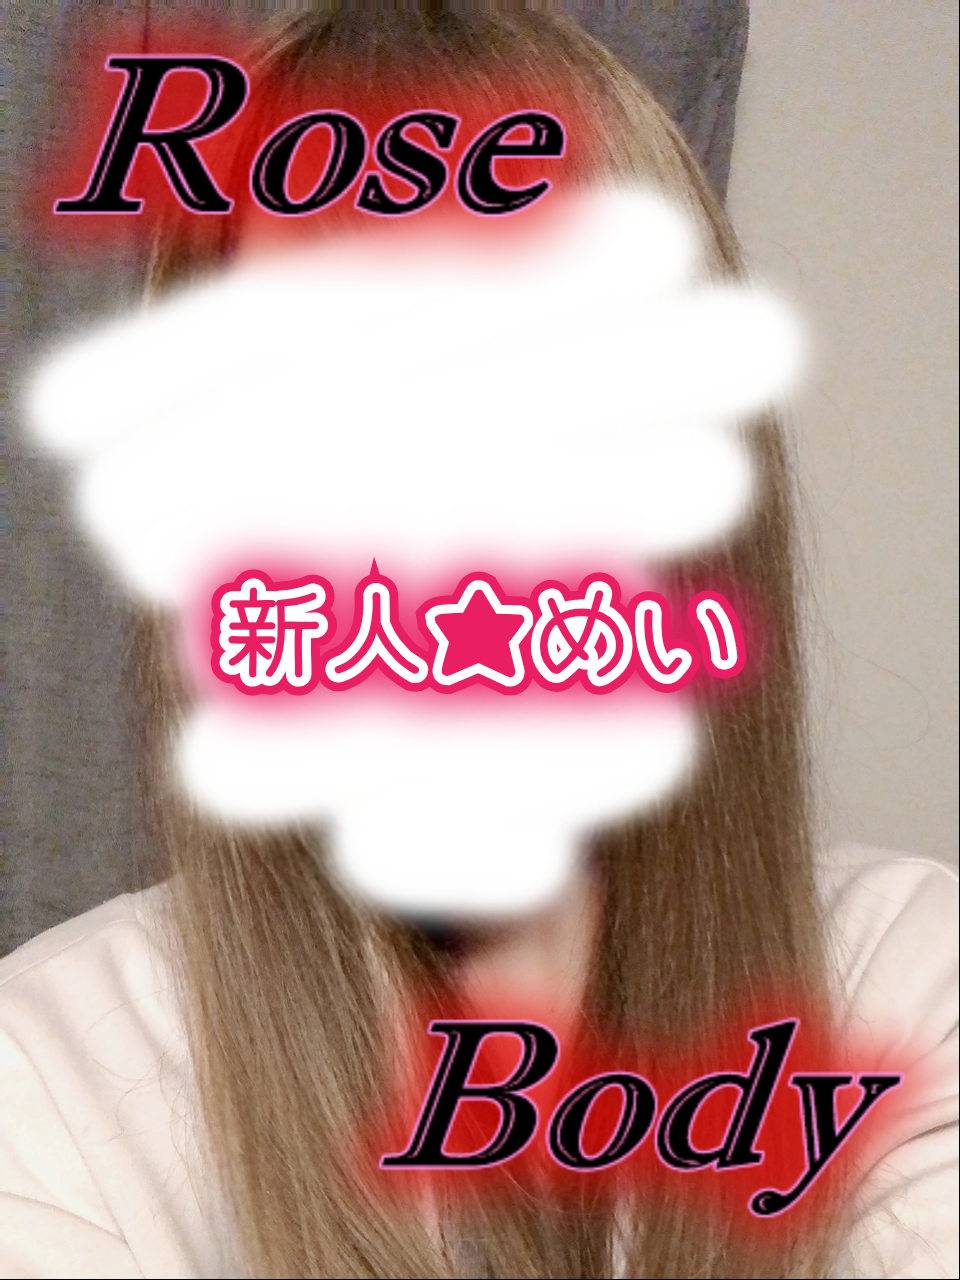 十和田rose bodyおすすめ女の子1